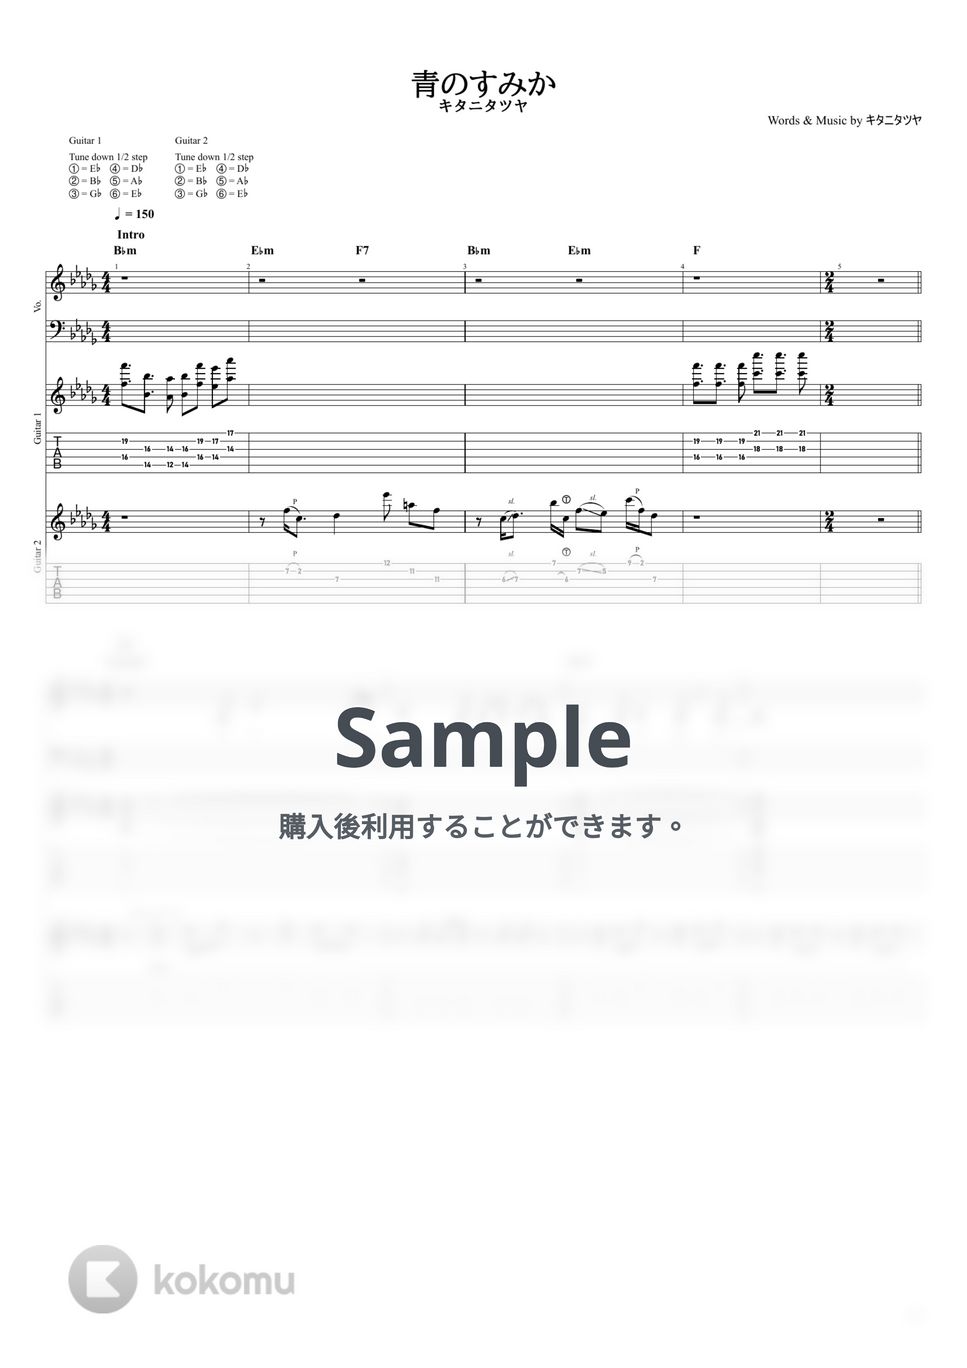 キタニタツヤ - 青のすみか (【ギターTAB譜】/ キタニタツヤ) by ヘクソ